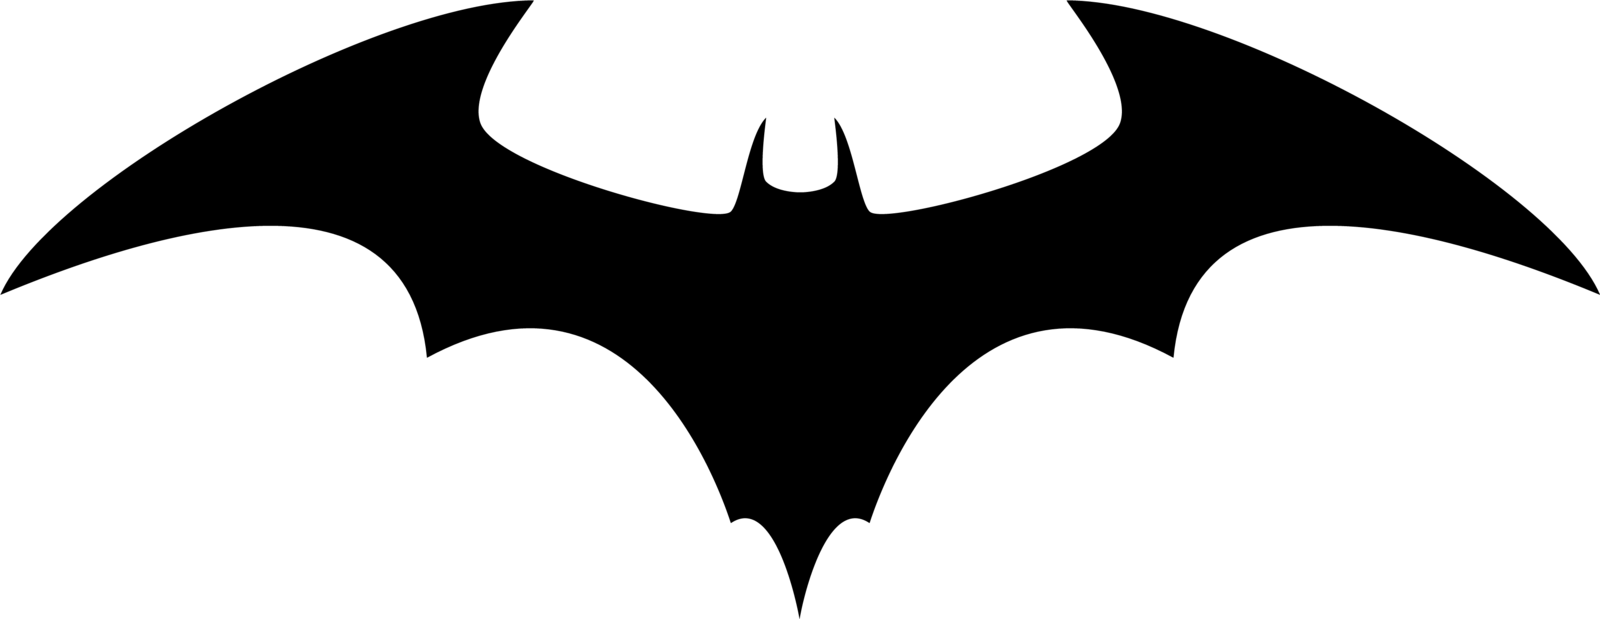 Cool Bat Logo - Cool Batman Symbol Drawings - clipartsgram.com | T-shirt Ideas - DC ...